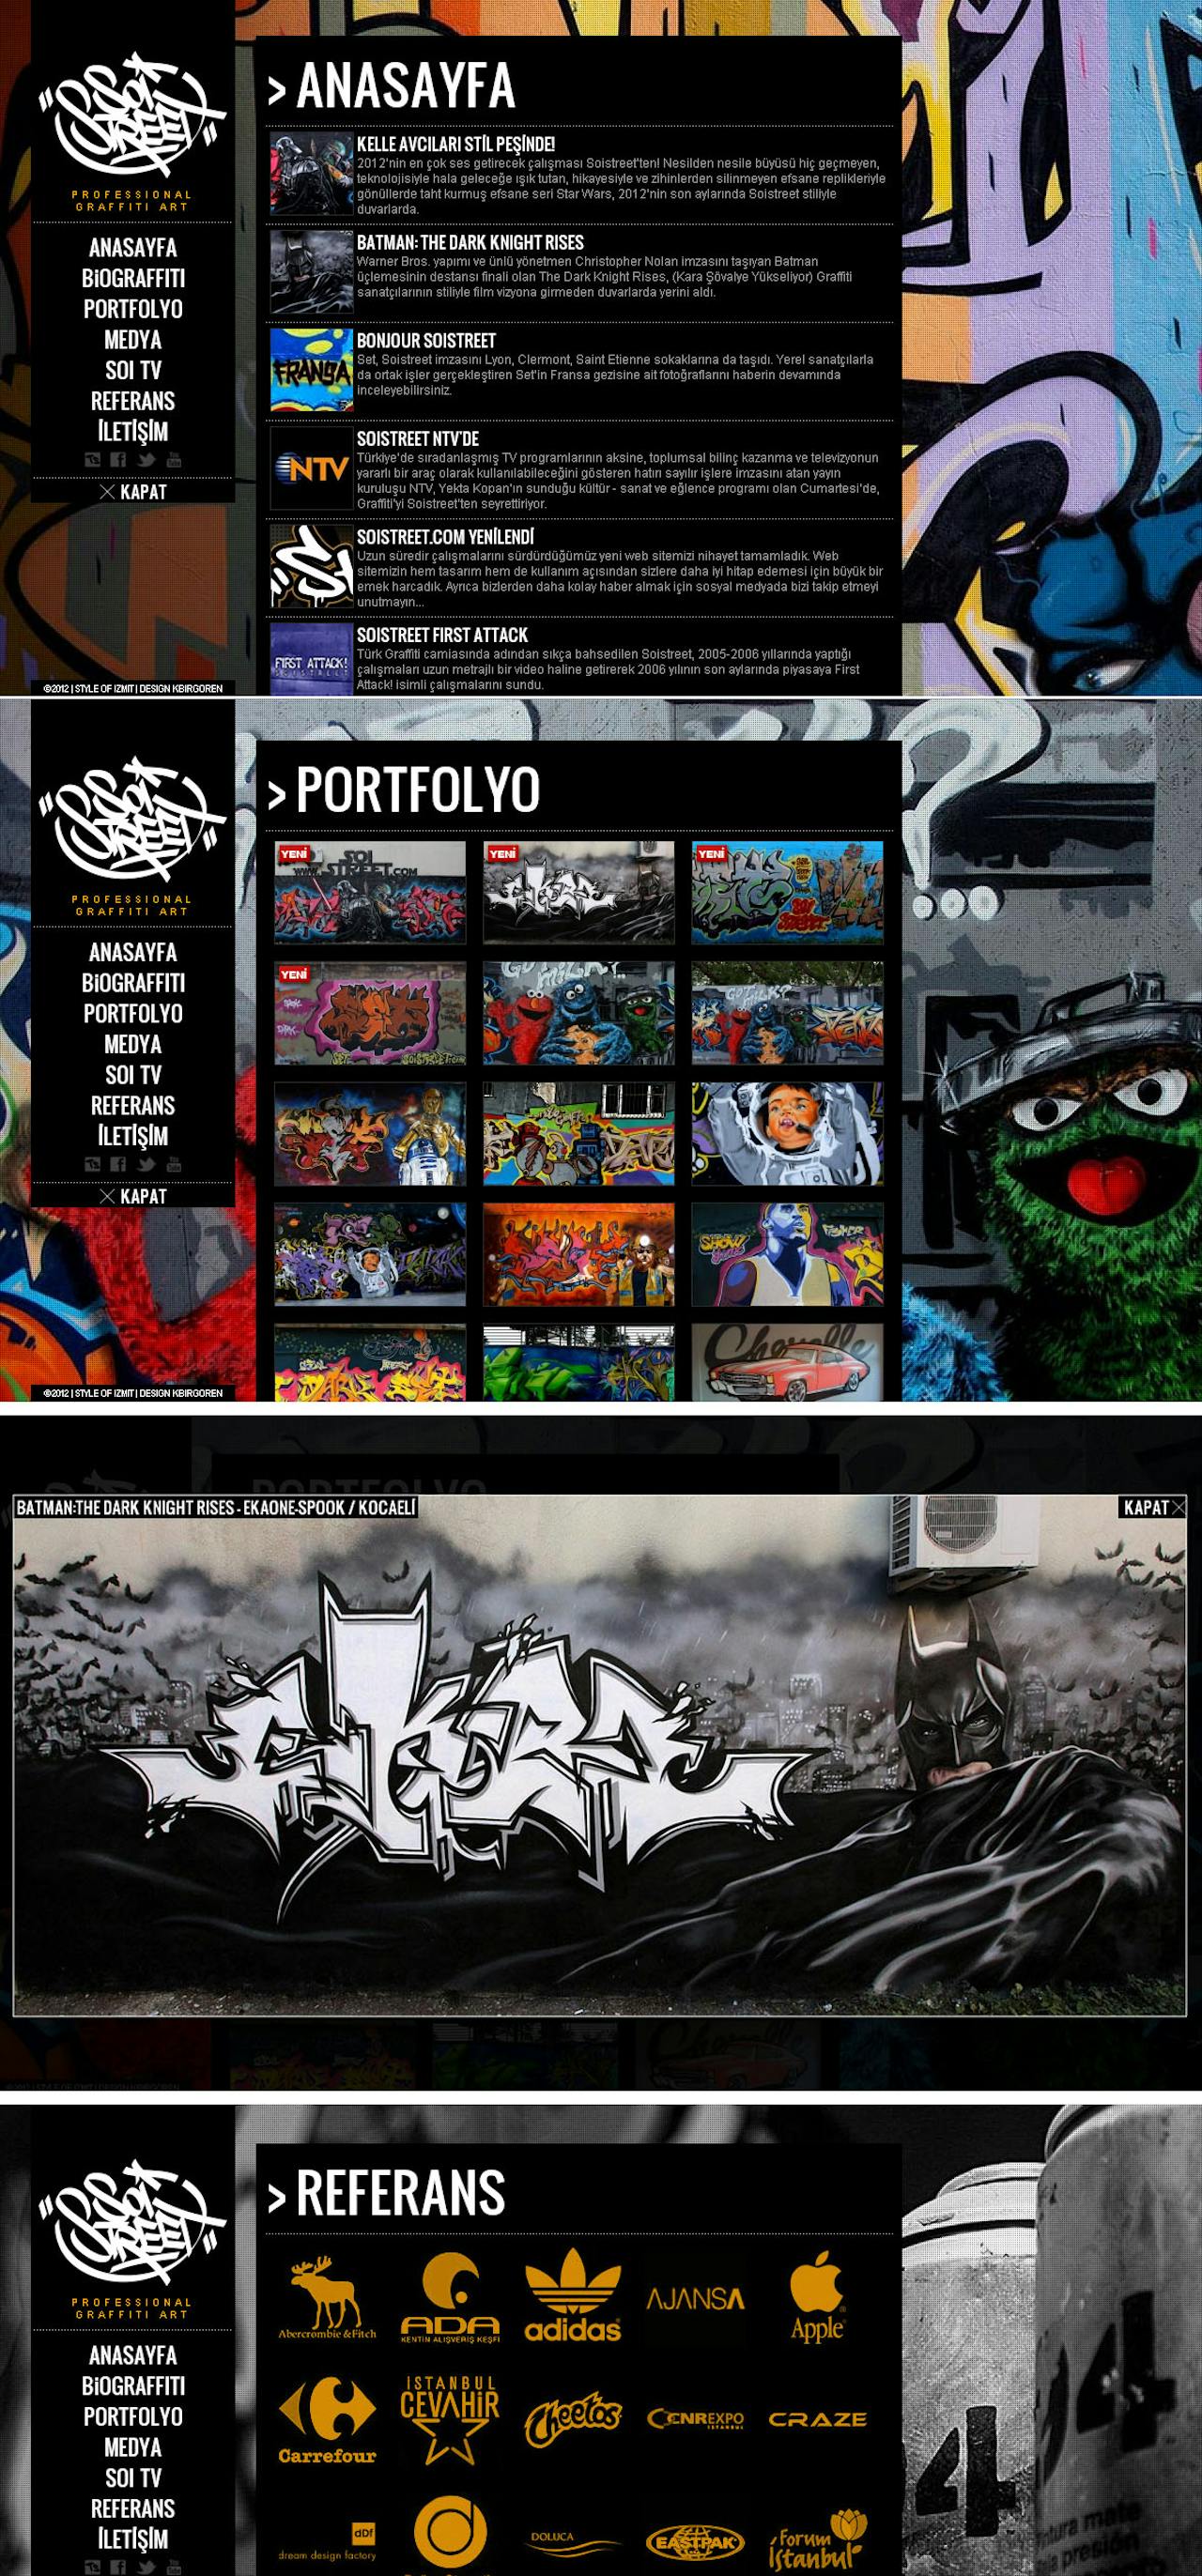 Soi Street Website Screenshot